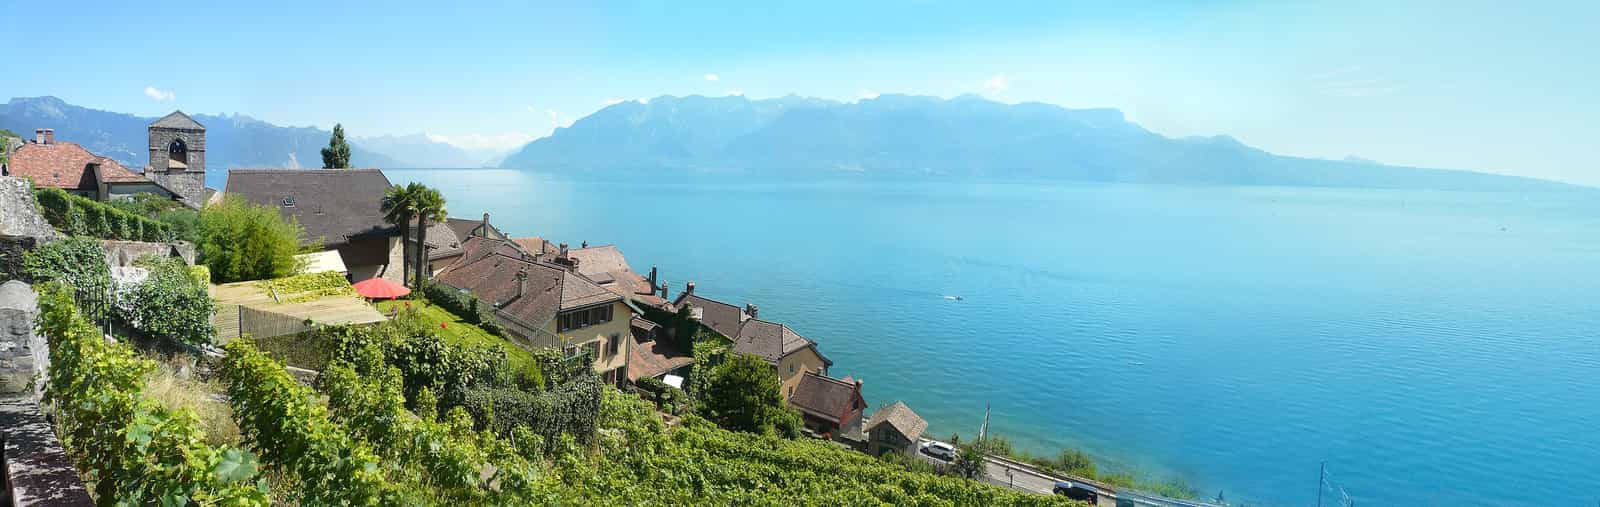 Das Schweizer Dorf Saint-Saphorin und sein protestantischer Tempel, umgeben von den Hängen des Lavaux, am Ufer des Genfer Sees westlich von Vevey, gegenüber dem nördlichen Ende der französischen Alpen (vorne und rechts).